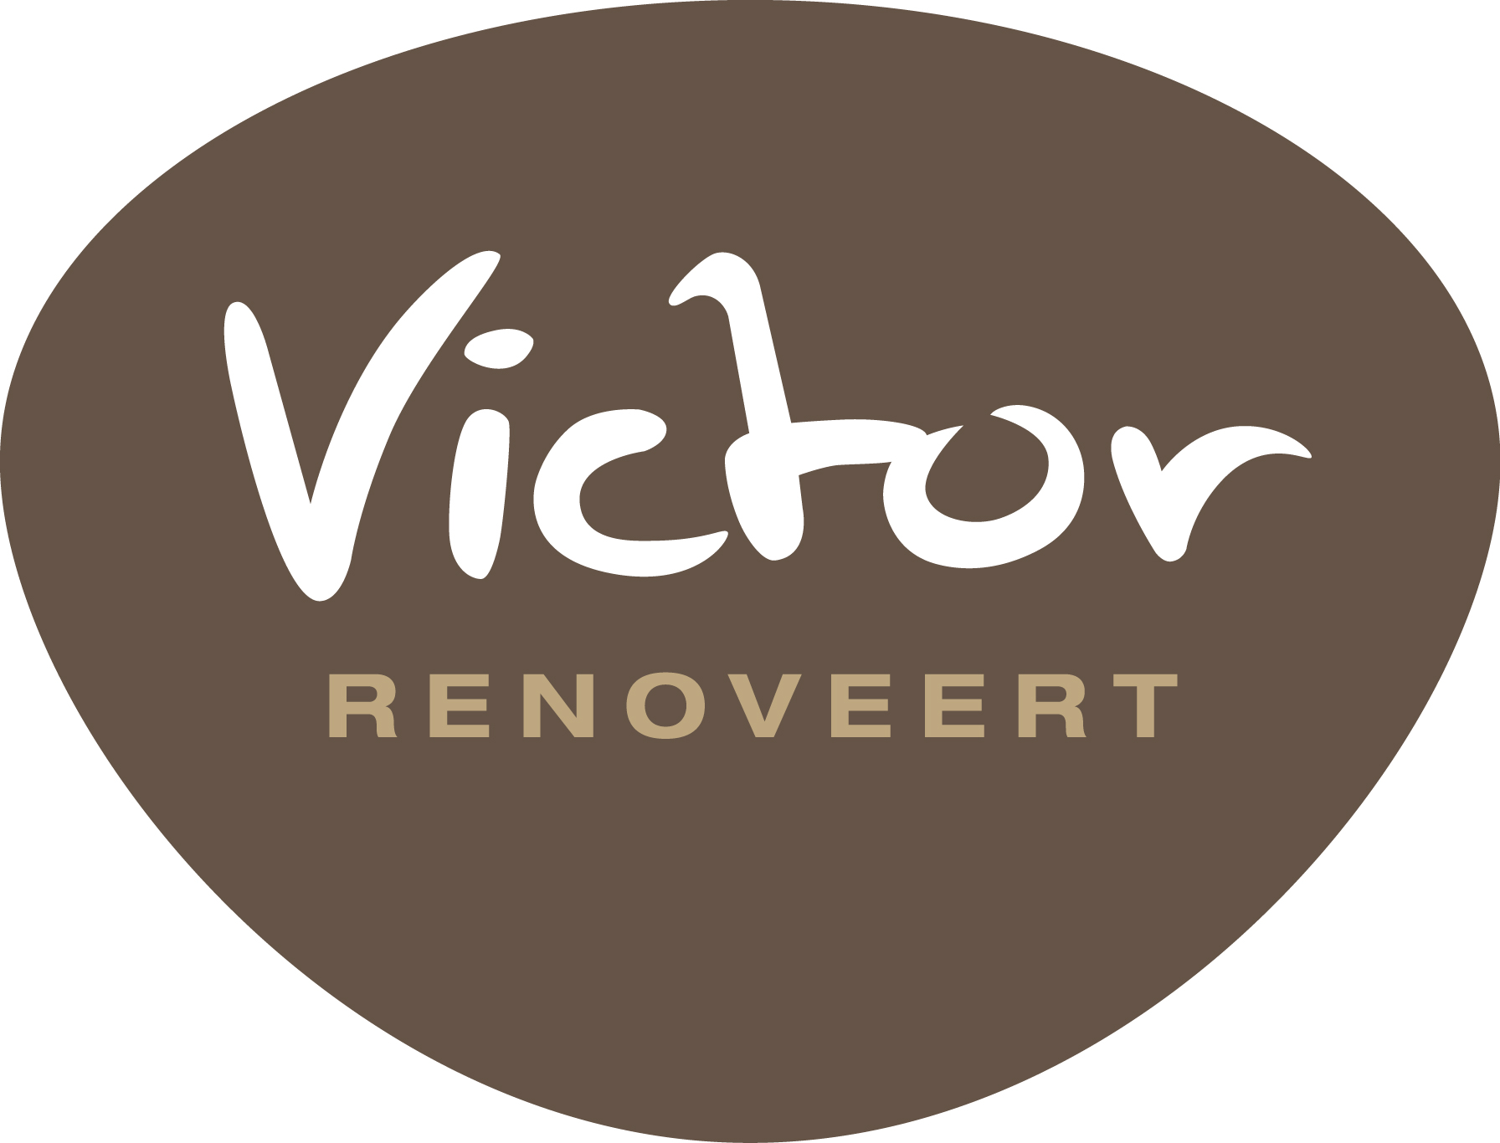 Logo Victor renoveert